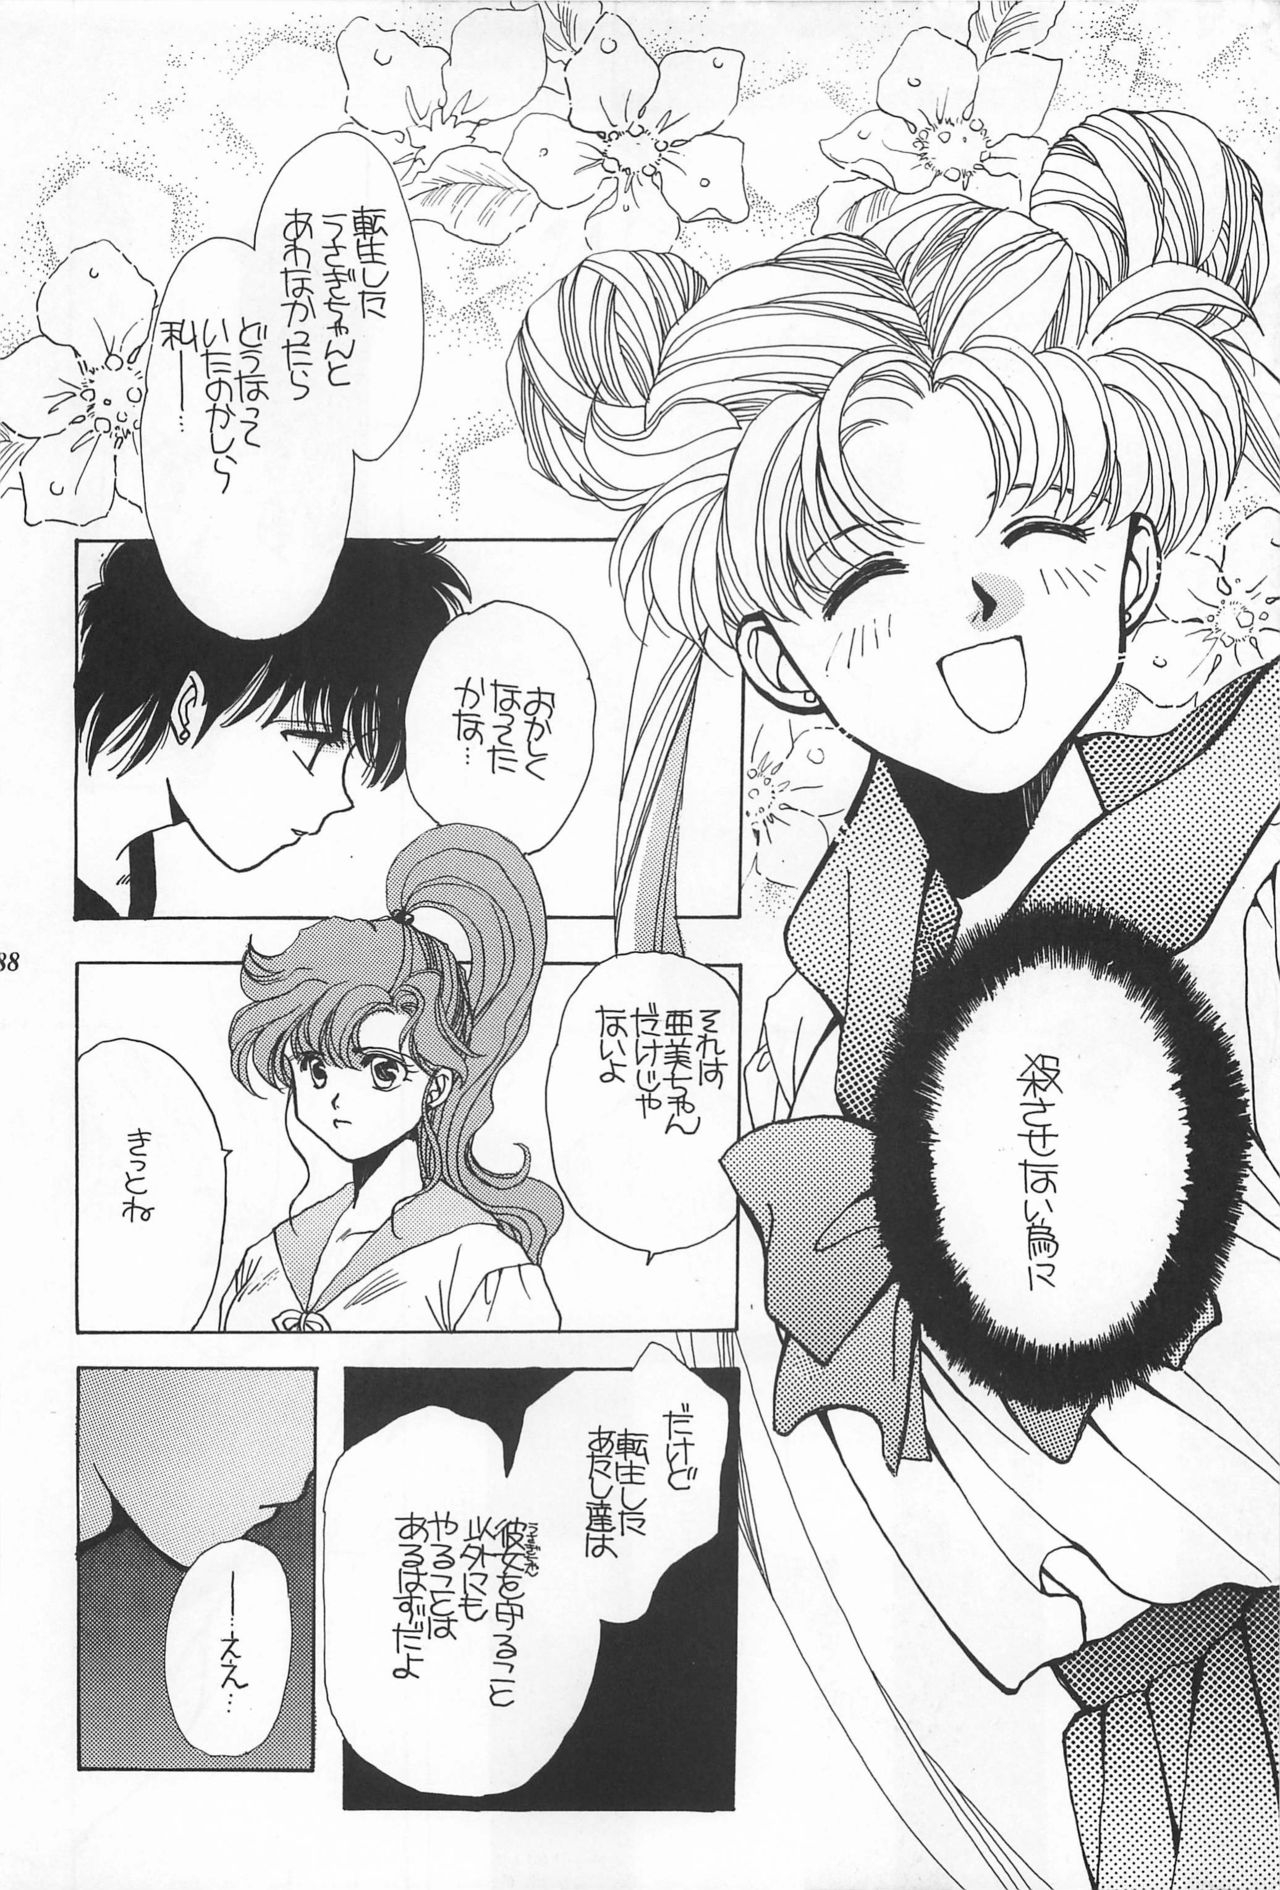 [Hello World (Muttri Moony)] Kaze no You ni Yume no You ni - Sailor Moon Collection (Sailor Moon) 187